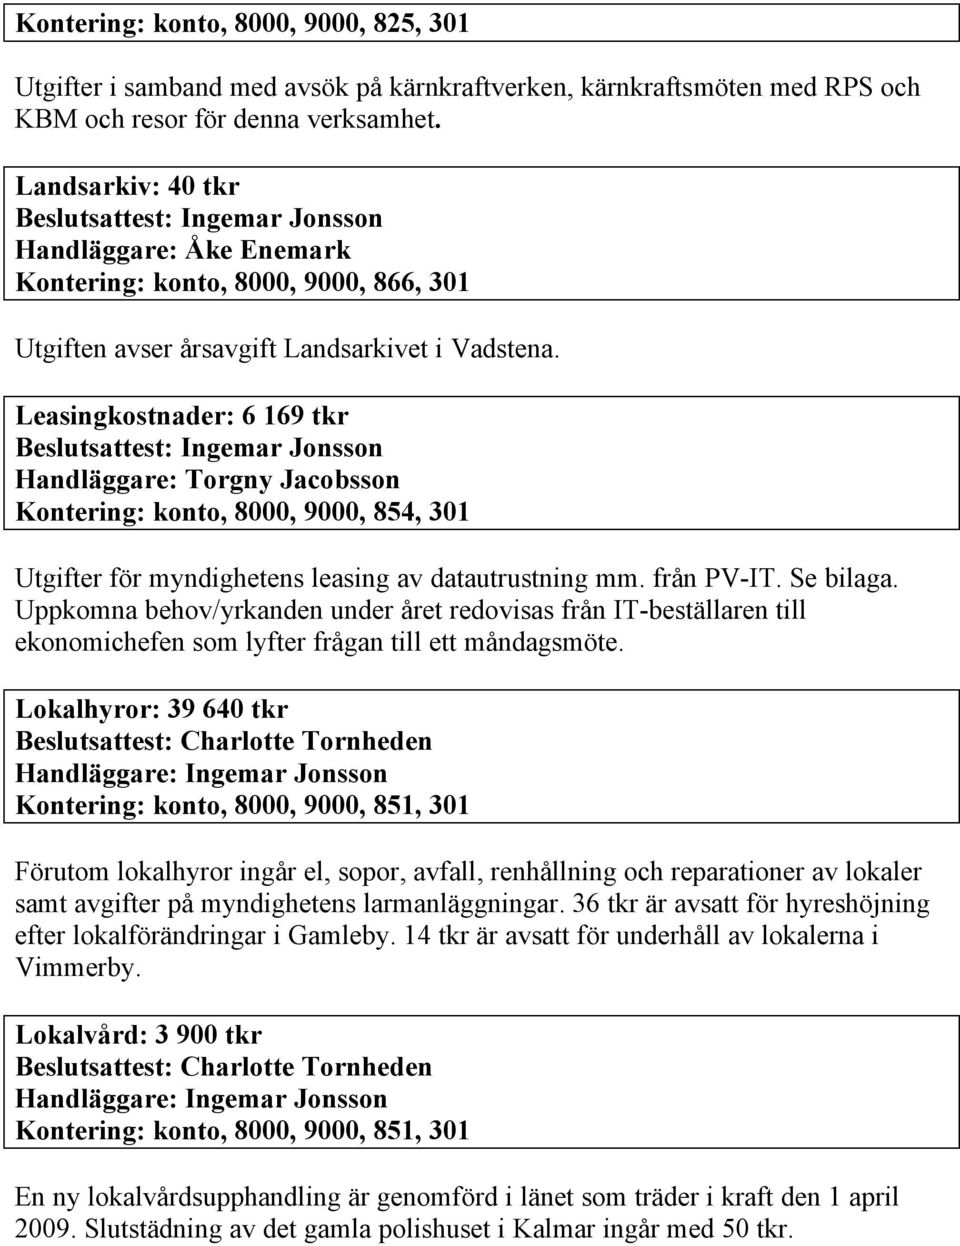 Leasingkostnader: 6 169 tkr Handläggare: Torgny Jacobsson Kontering: konto, 8000, 9000, 854, 301 Utgifter för myndighetens leasing av datautrustning mm. från PV-IT. Se bilaga.